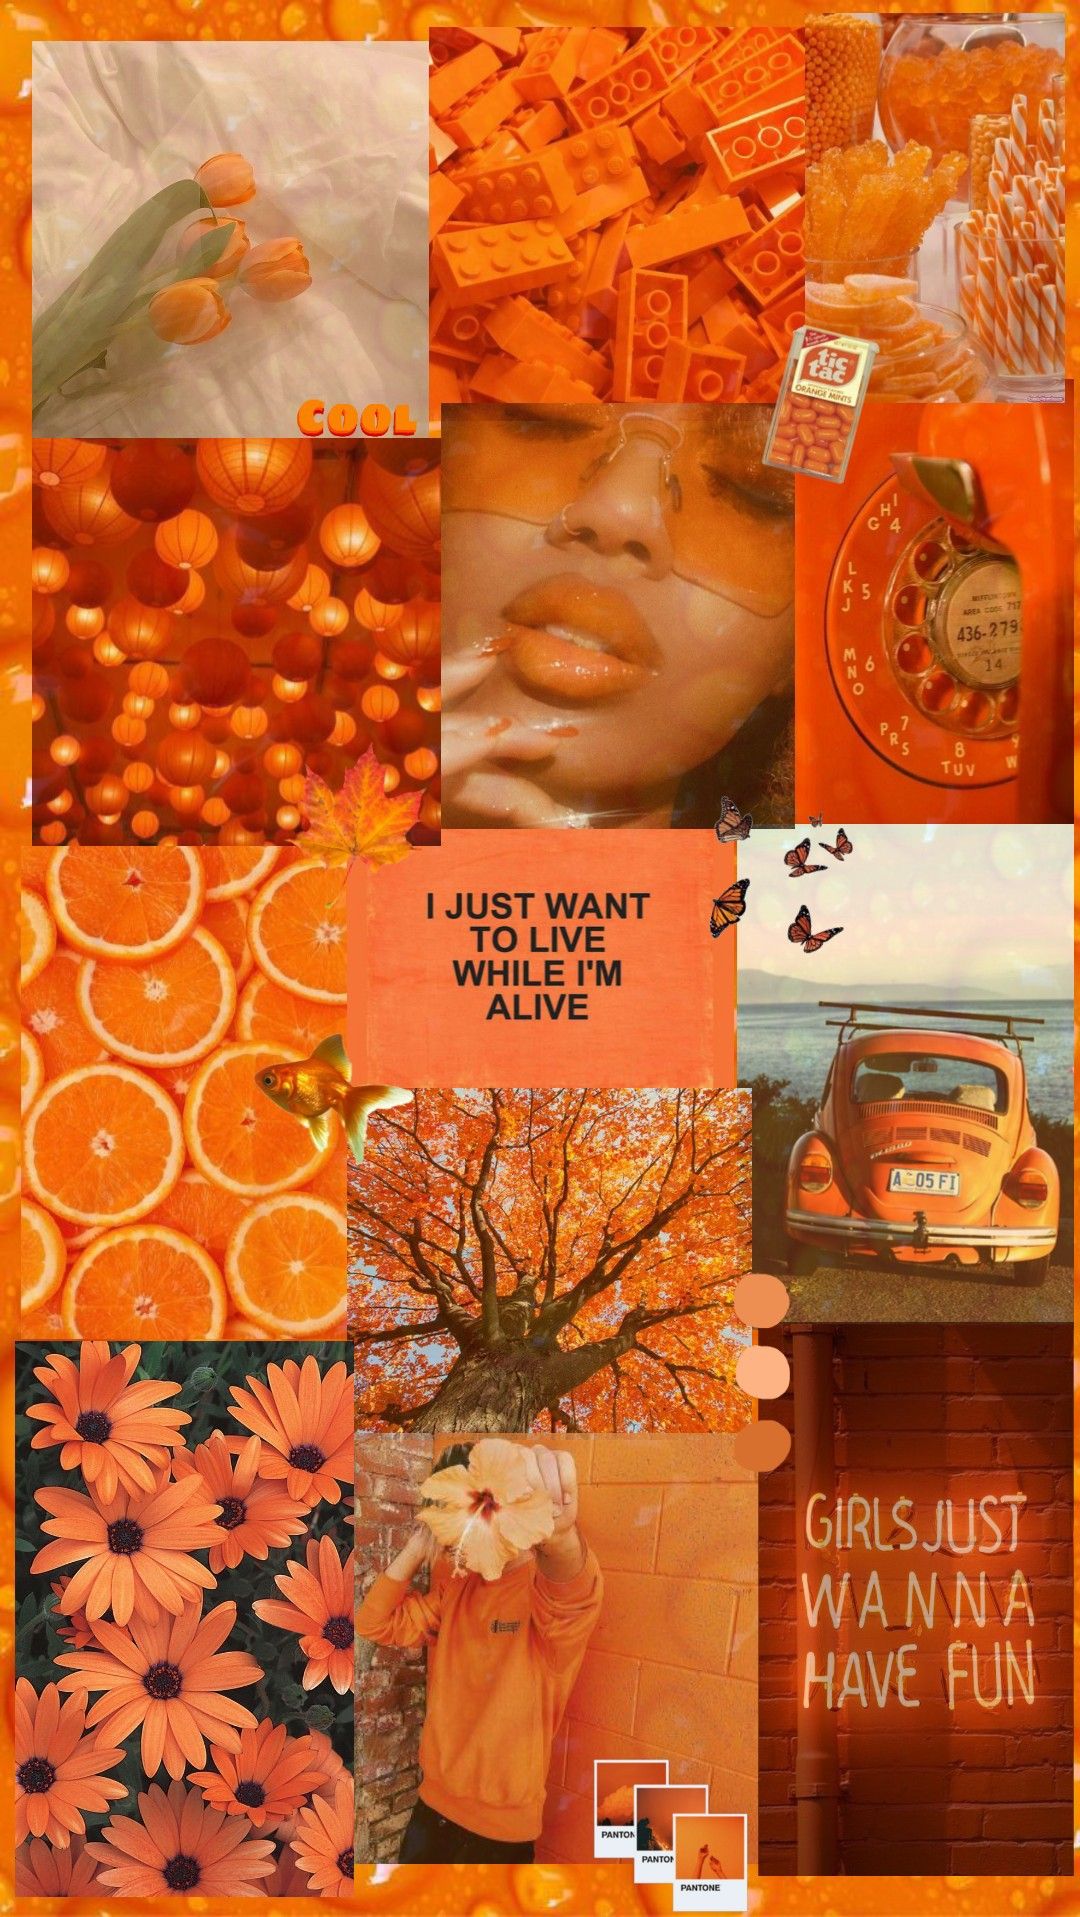 Aesthetic Orange Collage Iphone Wallpaper in 2020 | Orange aesthetic, Aesthetic backgrounds, Aesthetic wallpaper - Orange